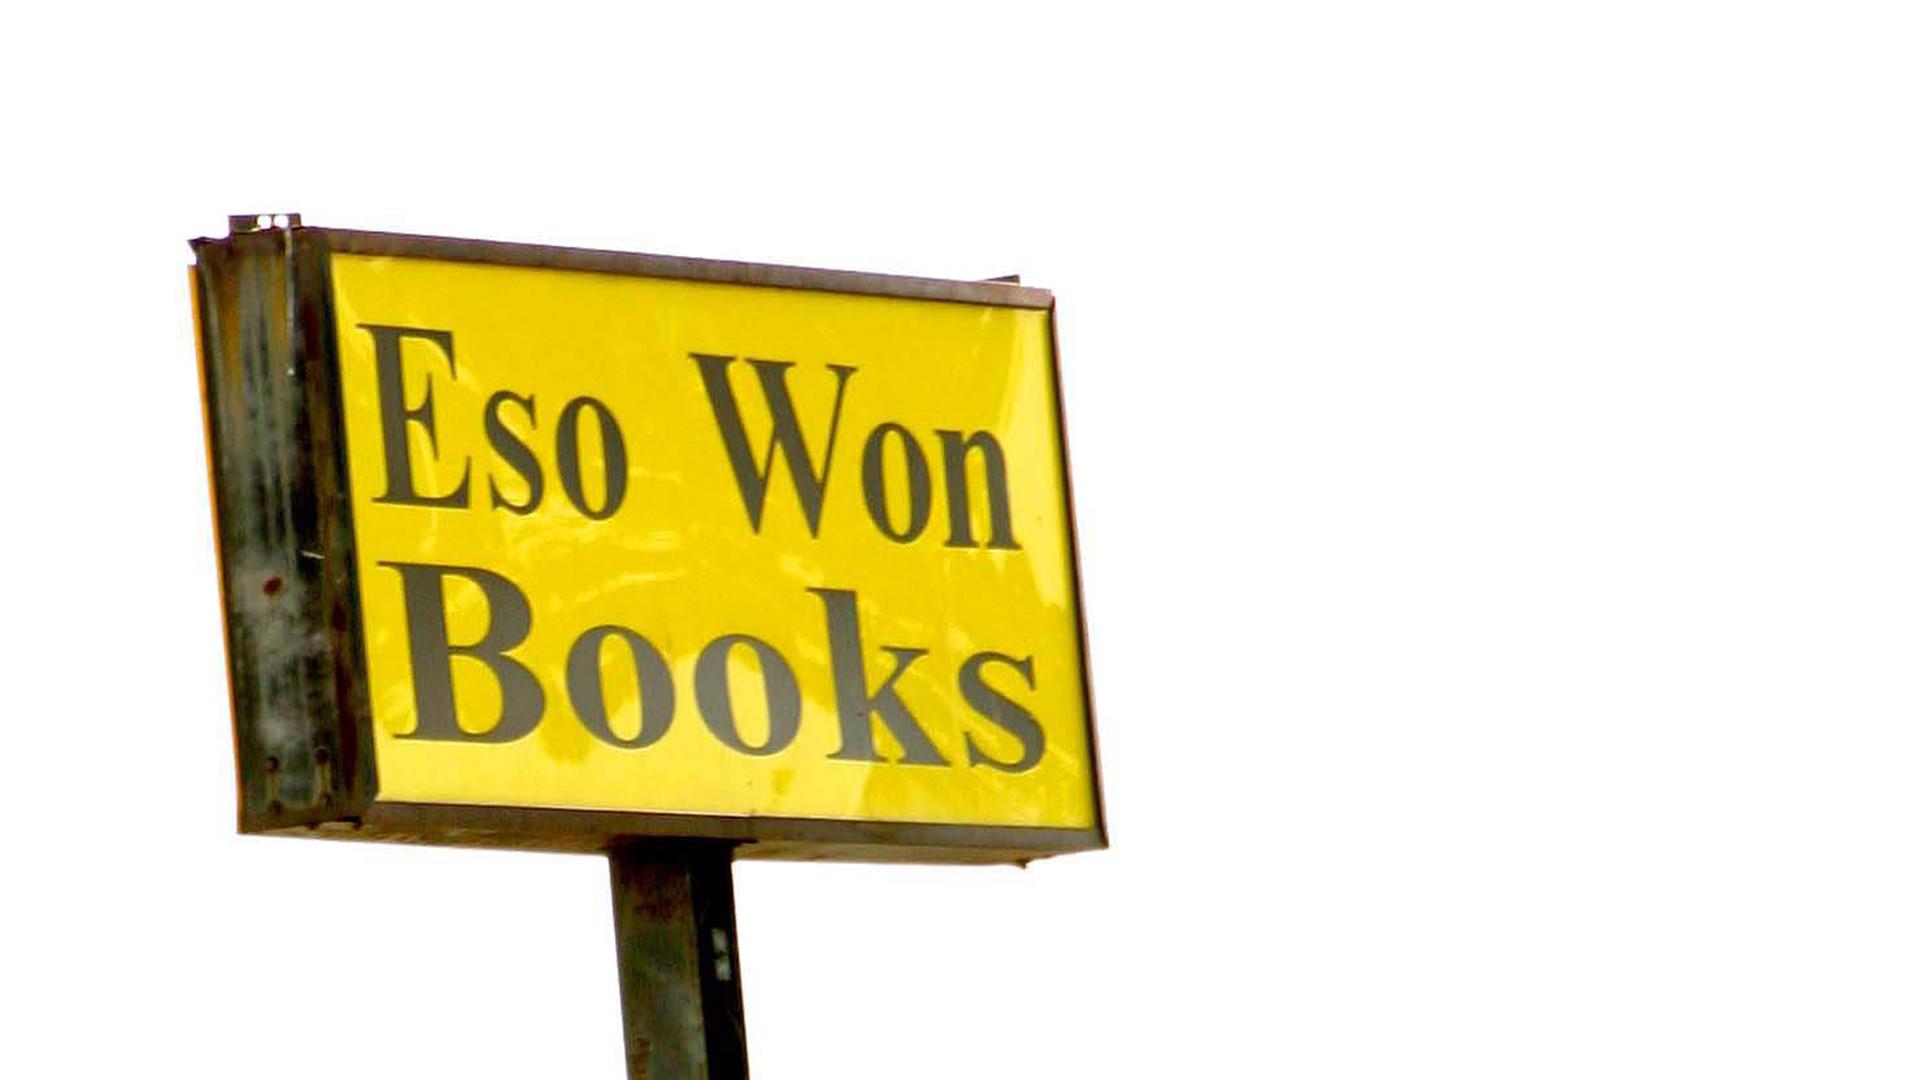 Das gelbe Ladensymbol mit der Aufschrift "Eso Won Books" ist auf einem Ständer auf dem Dach des Buchladens aufgestellt.